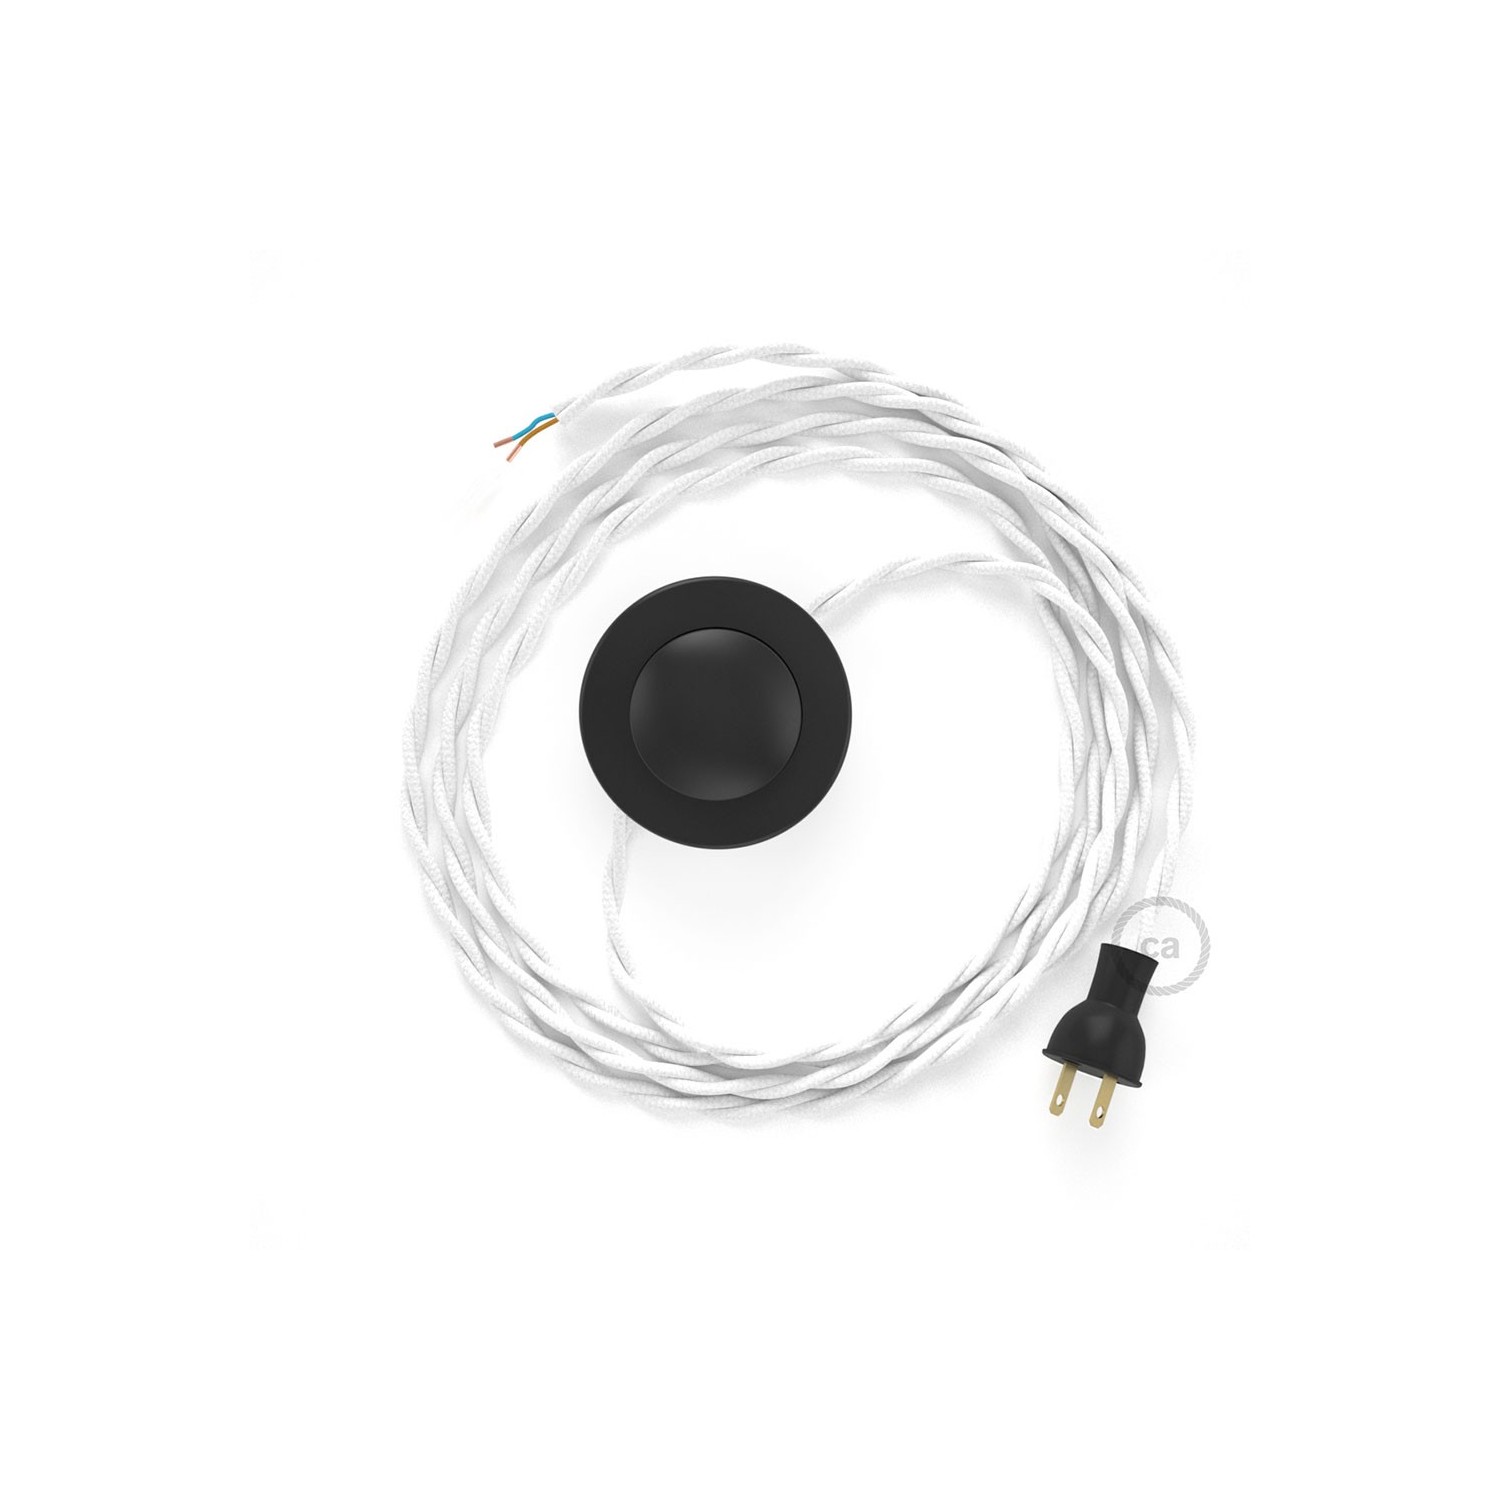 Cableado para lámpara de piso, cable TM01 Rayón Blanco 3 m. Elige tu el color de la clavija y del interruptor!